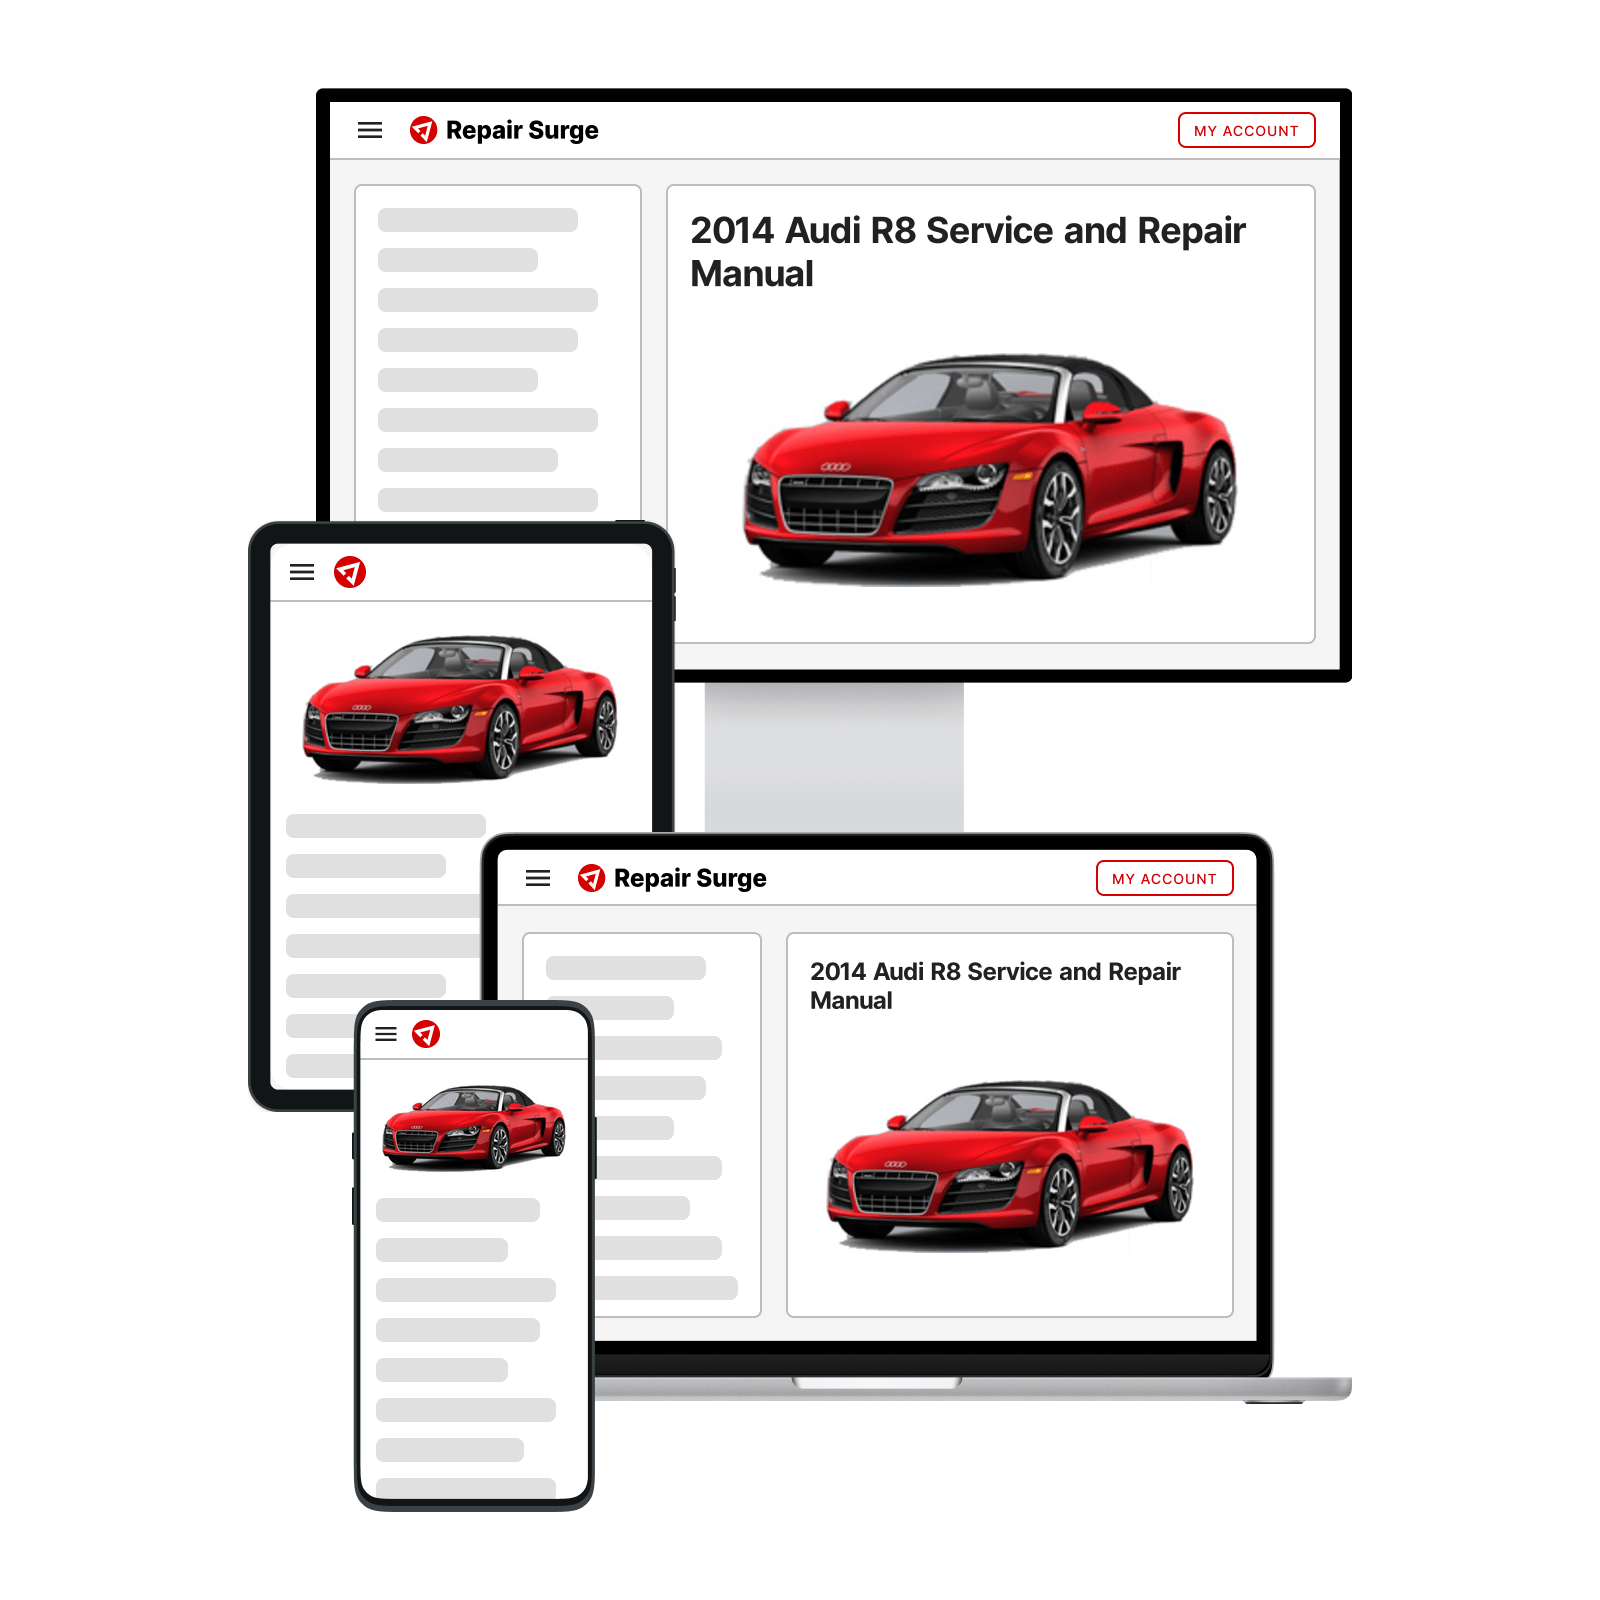 2014 Audi R8 service and repair manual hero image